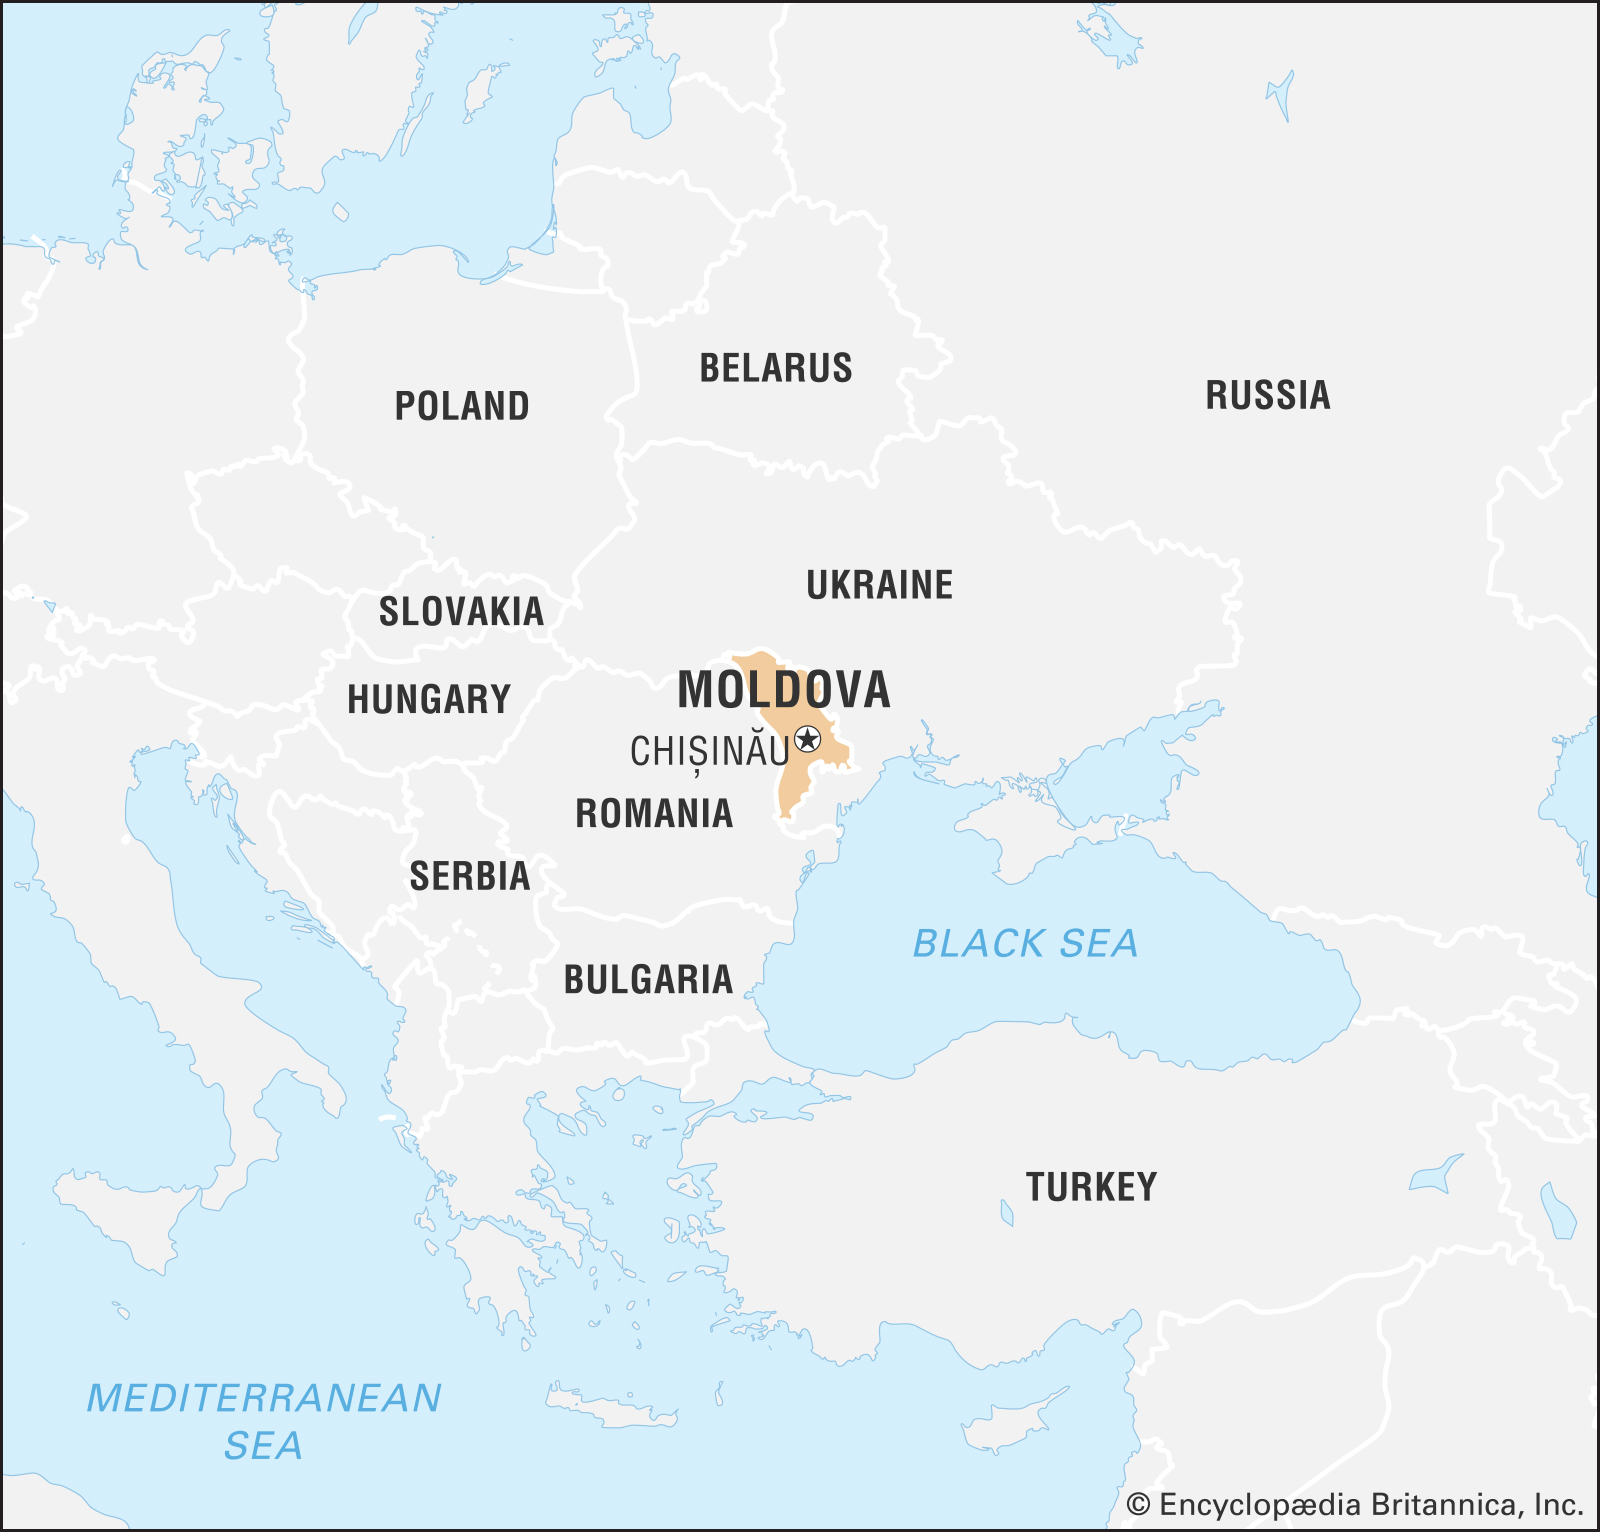 摩尔多瓦（Moldova）使用的，海牙认证美国